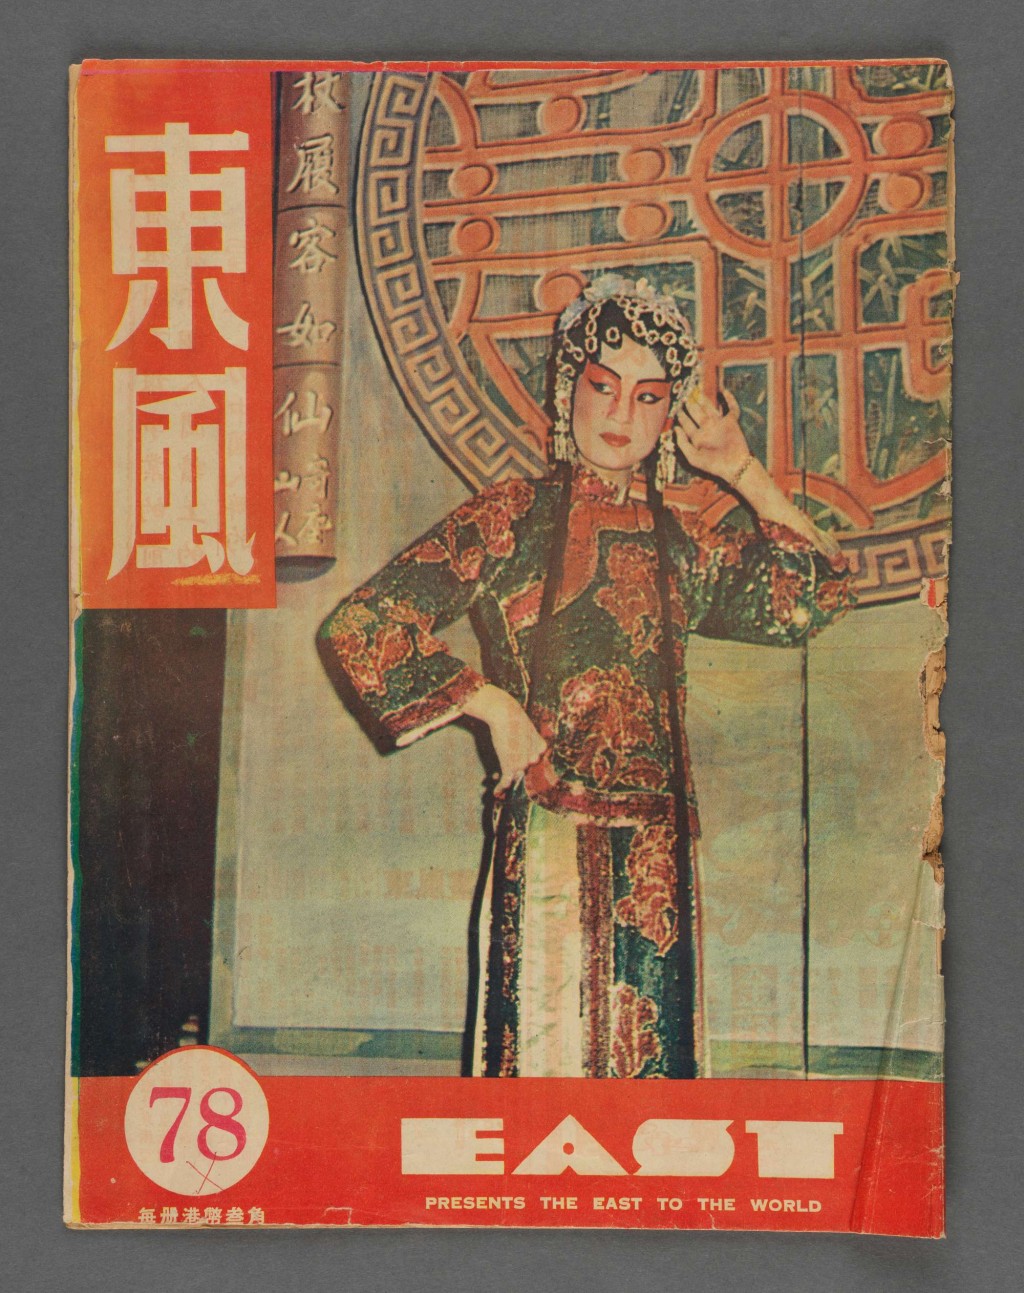 由梁沛錦博士捐贈的《東風畫報》第78期（1950年代） 